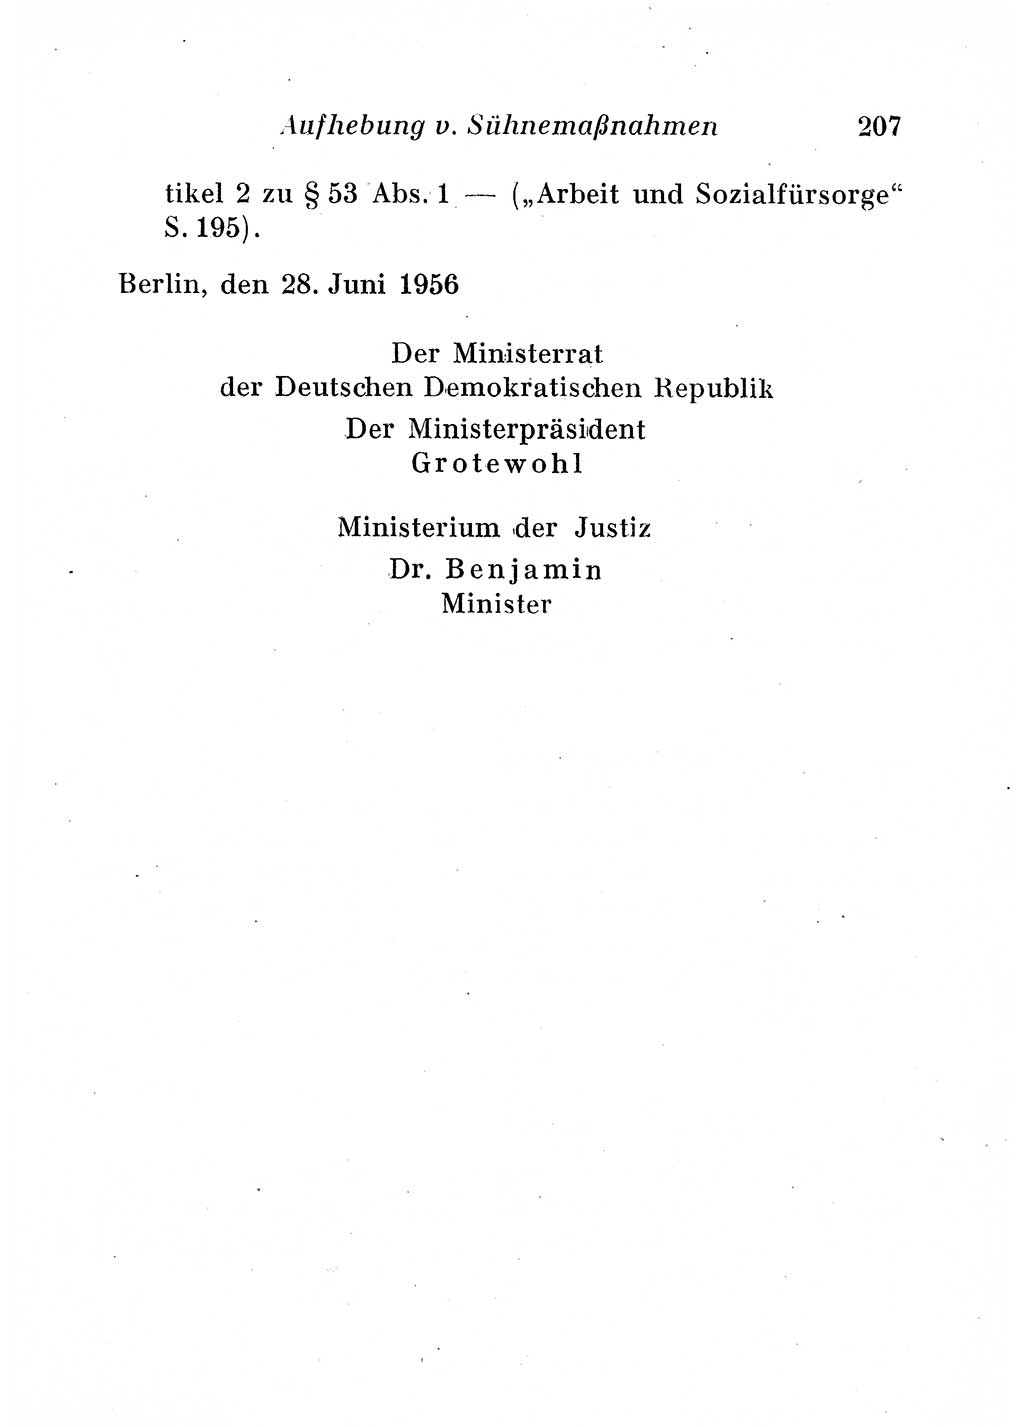 Staats- und verwaltungsrechtliche Gesetze der Deutschen Demokratischen Republik (DDR) 1958, Seite 207 (StVerwR Ges. DDR 1958, S. 207)